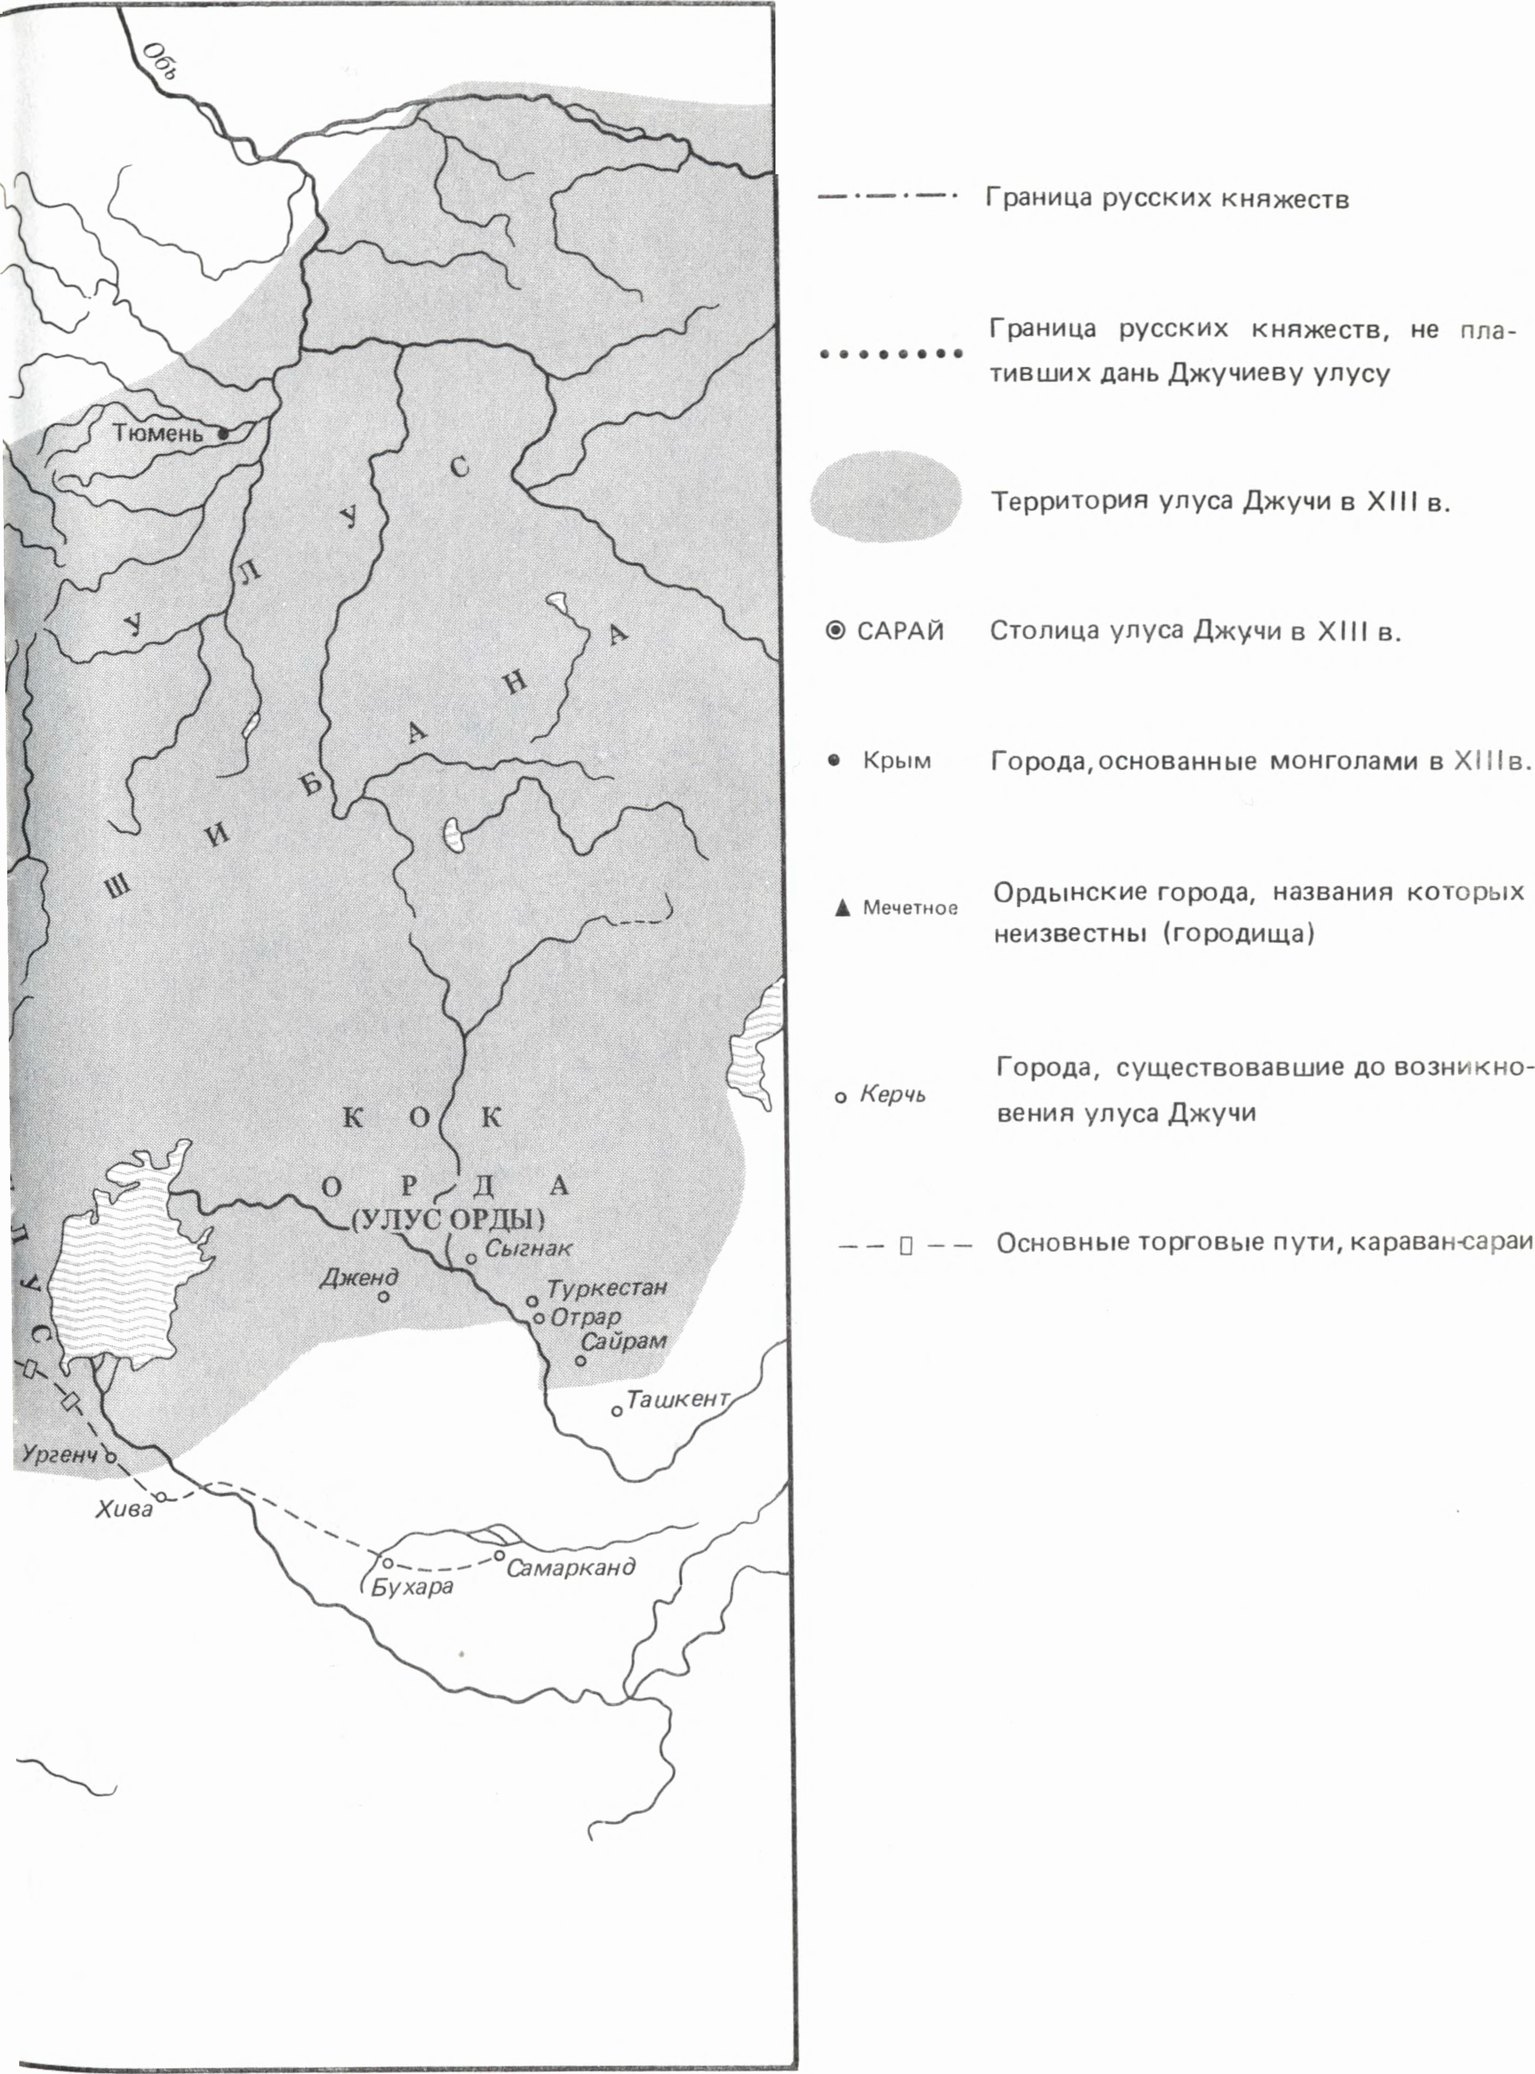 Улус Джучи (Золотая Орда) В XIII в. (составлена на основании карты В.Л. Егорова)